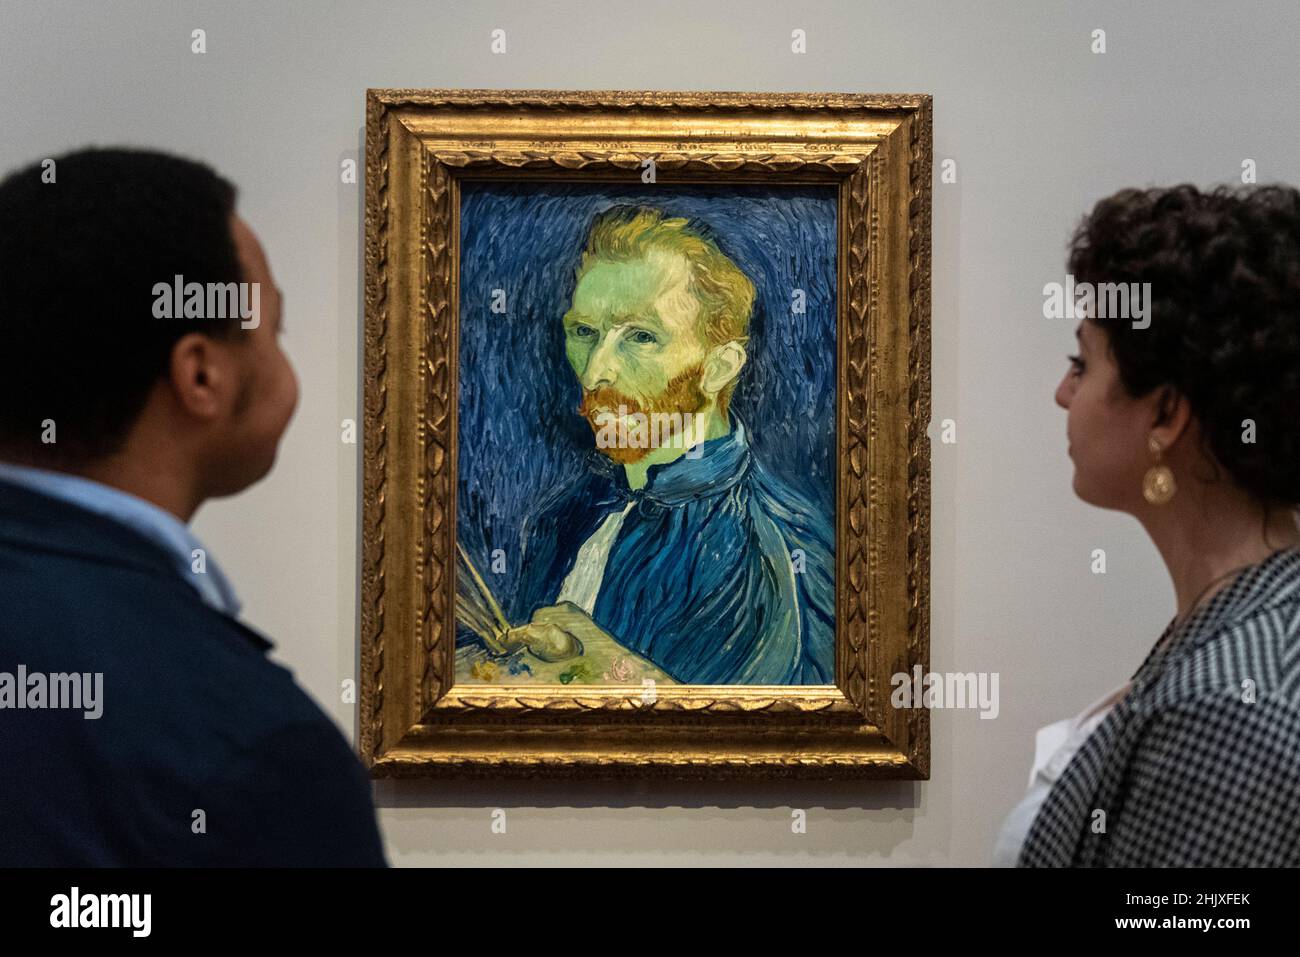 Vincent van Gogh's self-portraits